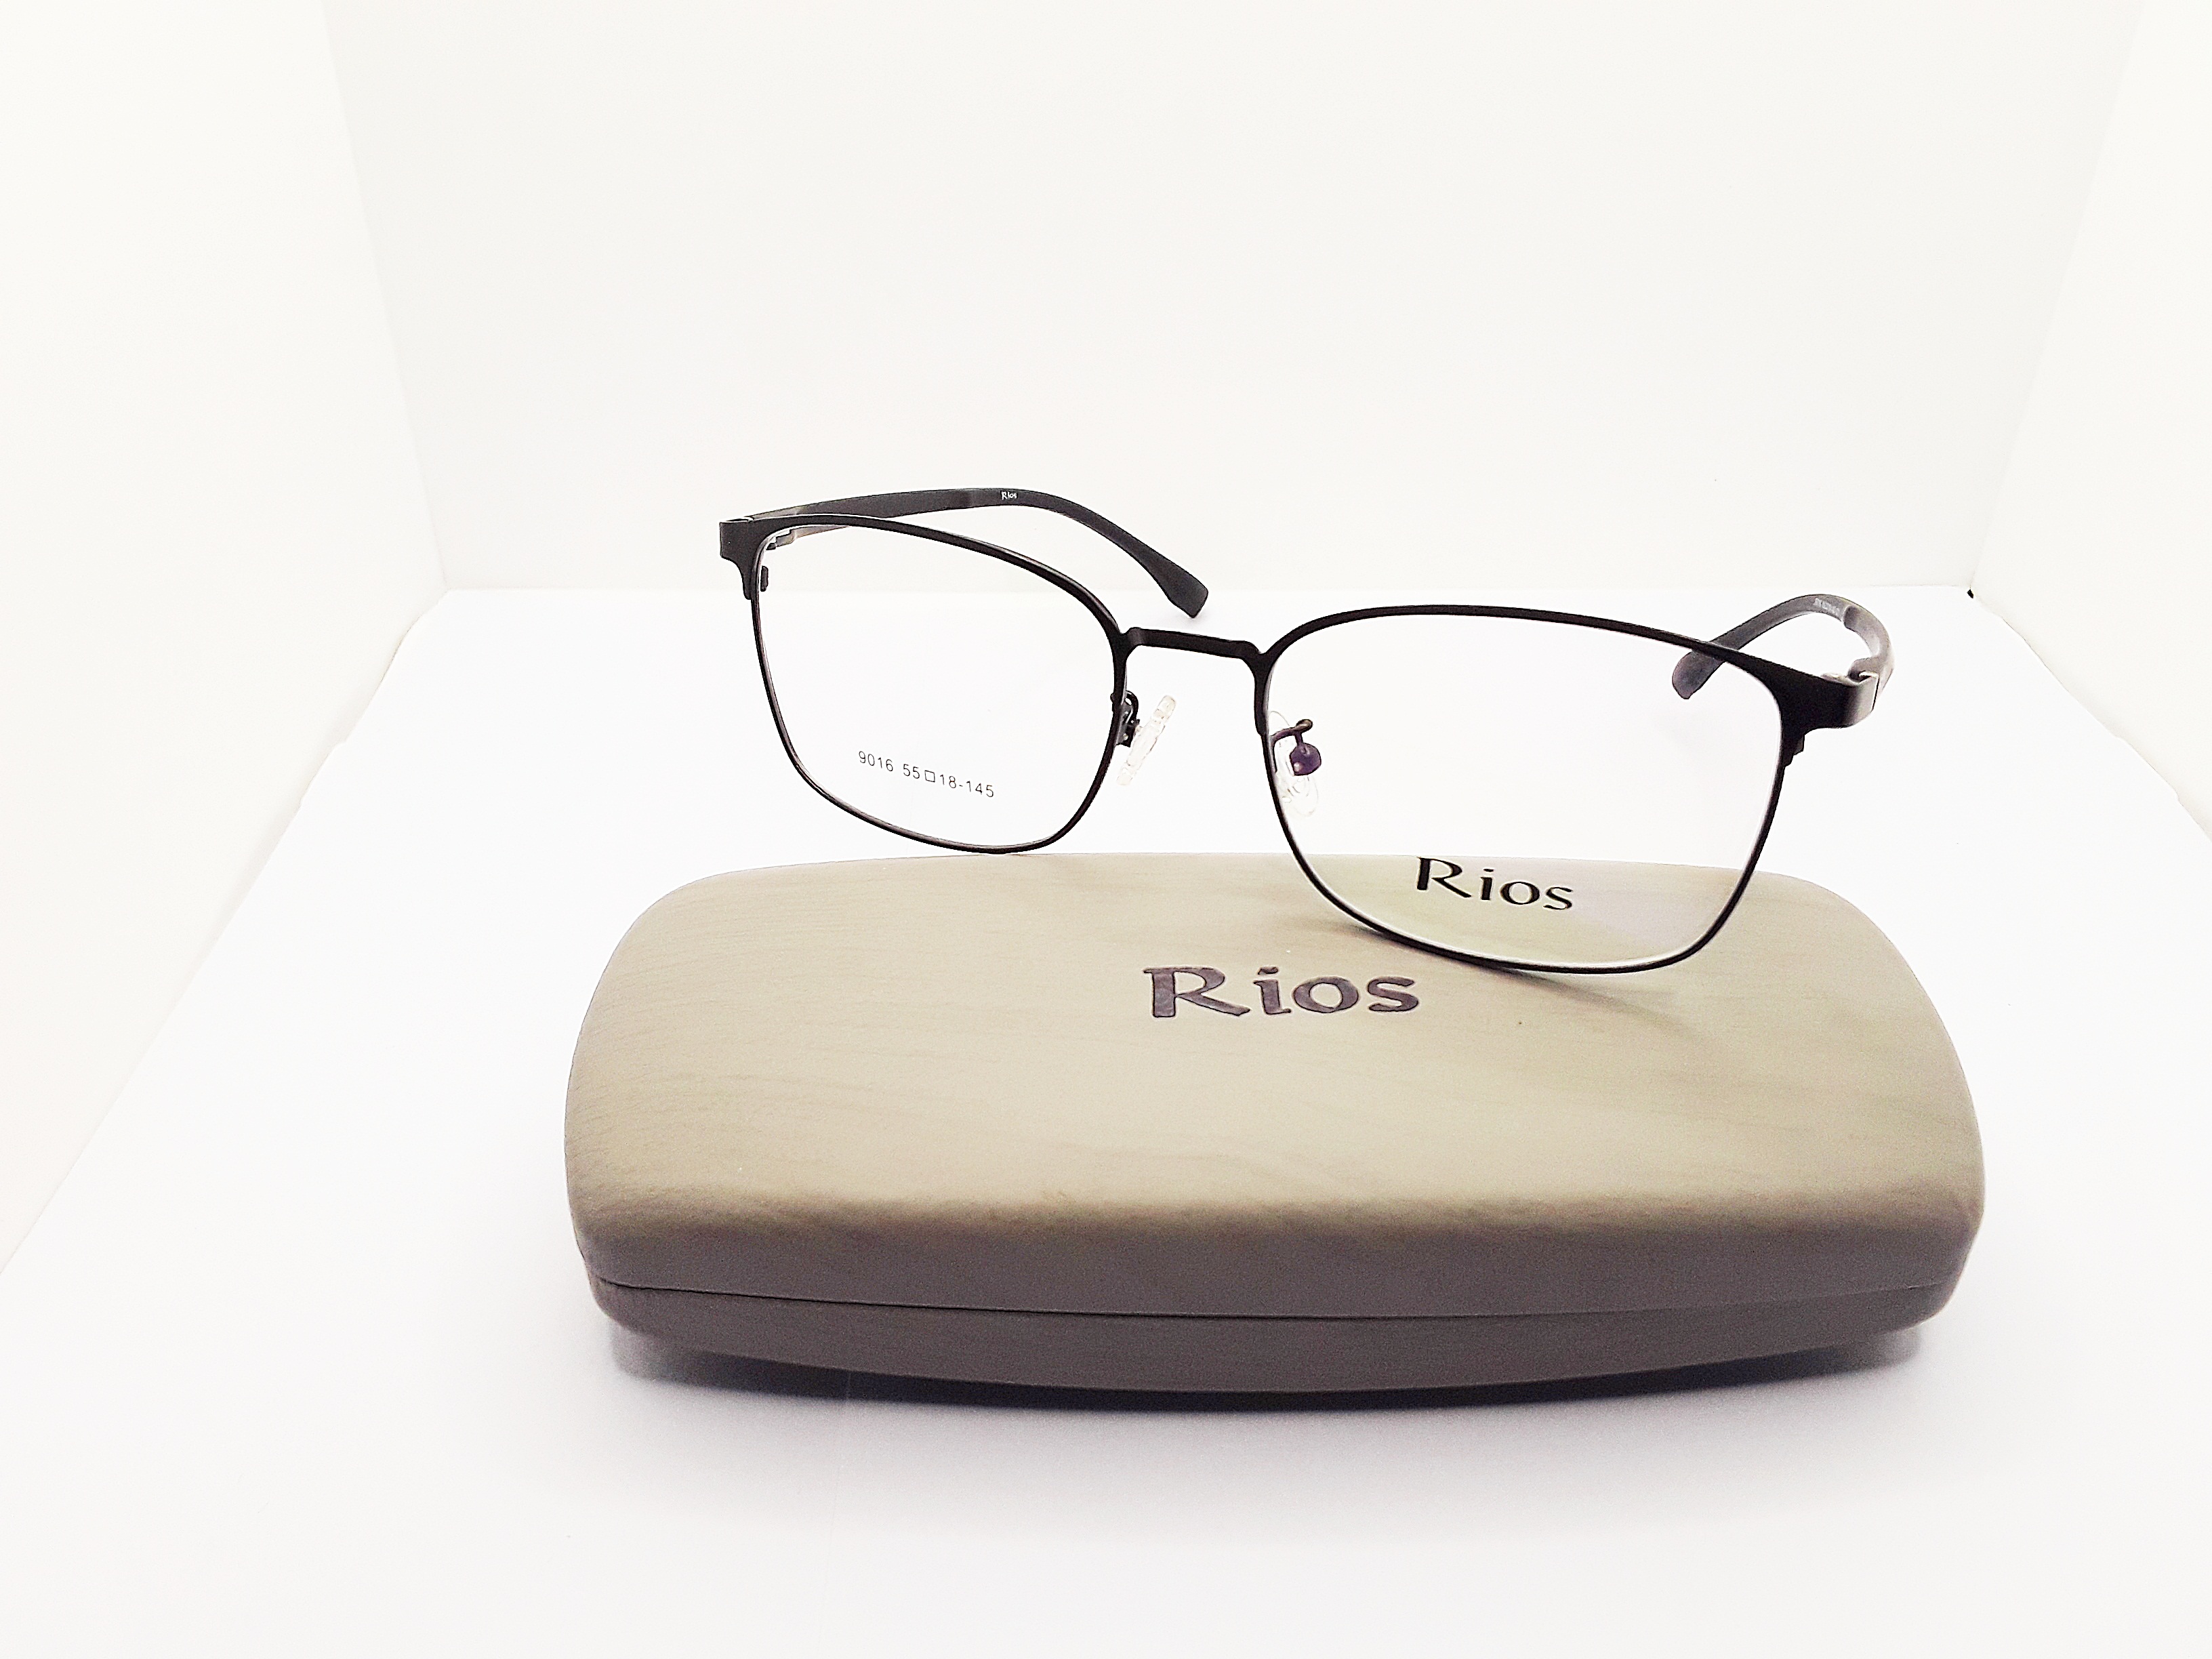 ภาพอธิบายเพิ่มเติมของ แว่นสายตายาว แว่นตาอ่านหนังสือ ตัดแว่น แว่นตัด เลนส์ออโต้เปลี่ยนสีอ้ตโนมัติ แว่นตัดประกอบเลนส์แท้จากร้านแว่นโดยตรง มาตรฐาน 9016